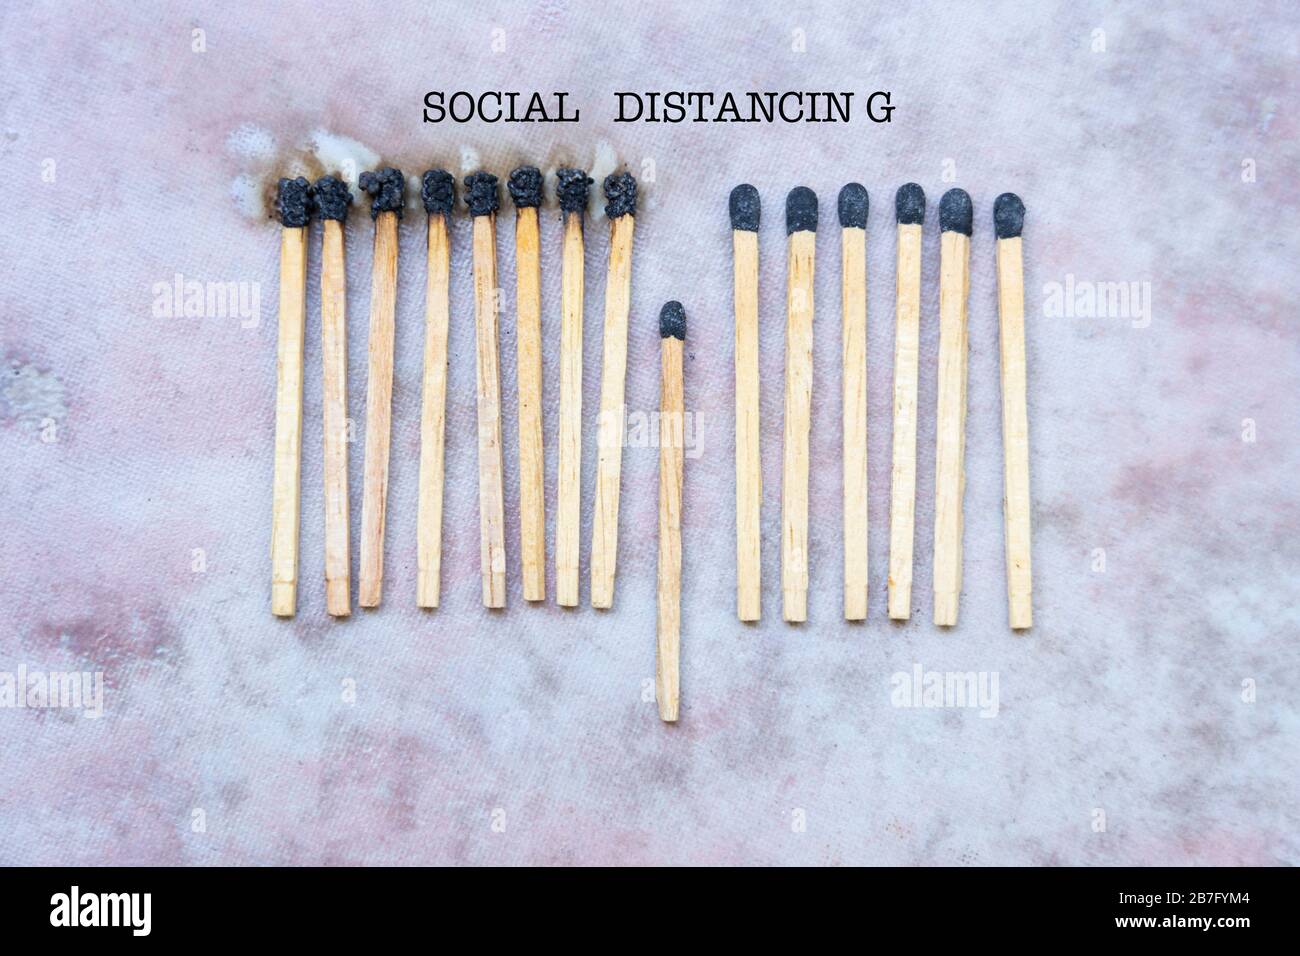 Konzeptionelles Bild der sozialen Distanzierung als Interventionsmethode gegen die Verbreitung von Coronavirus, COVID-19. Stockfoto